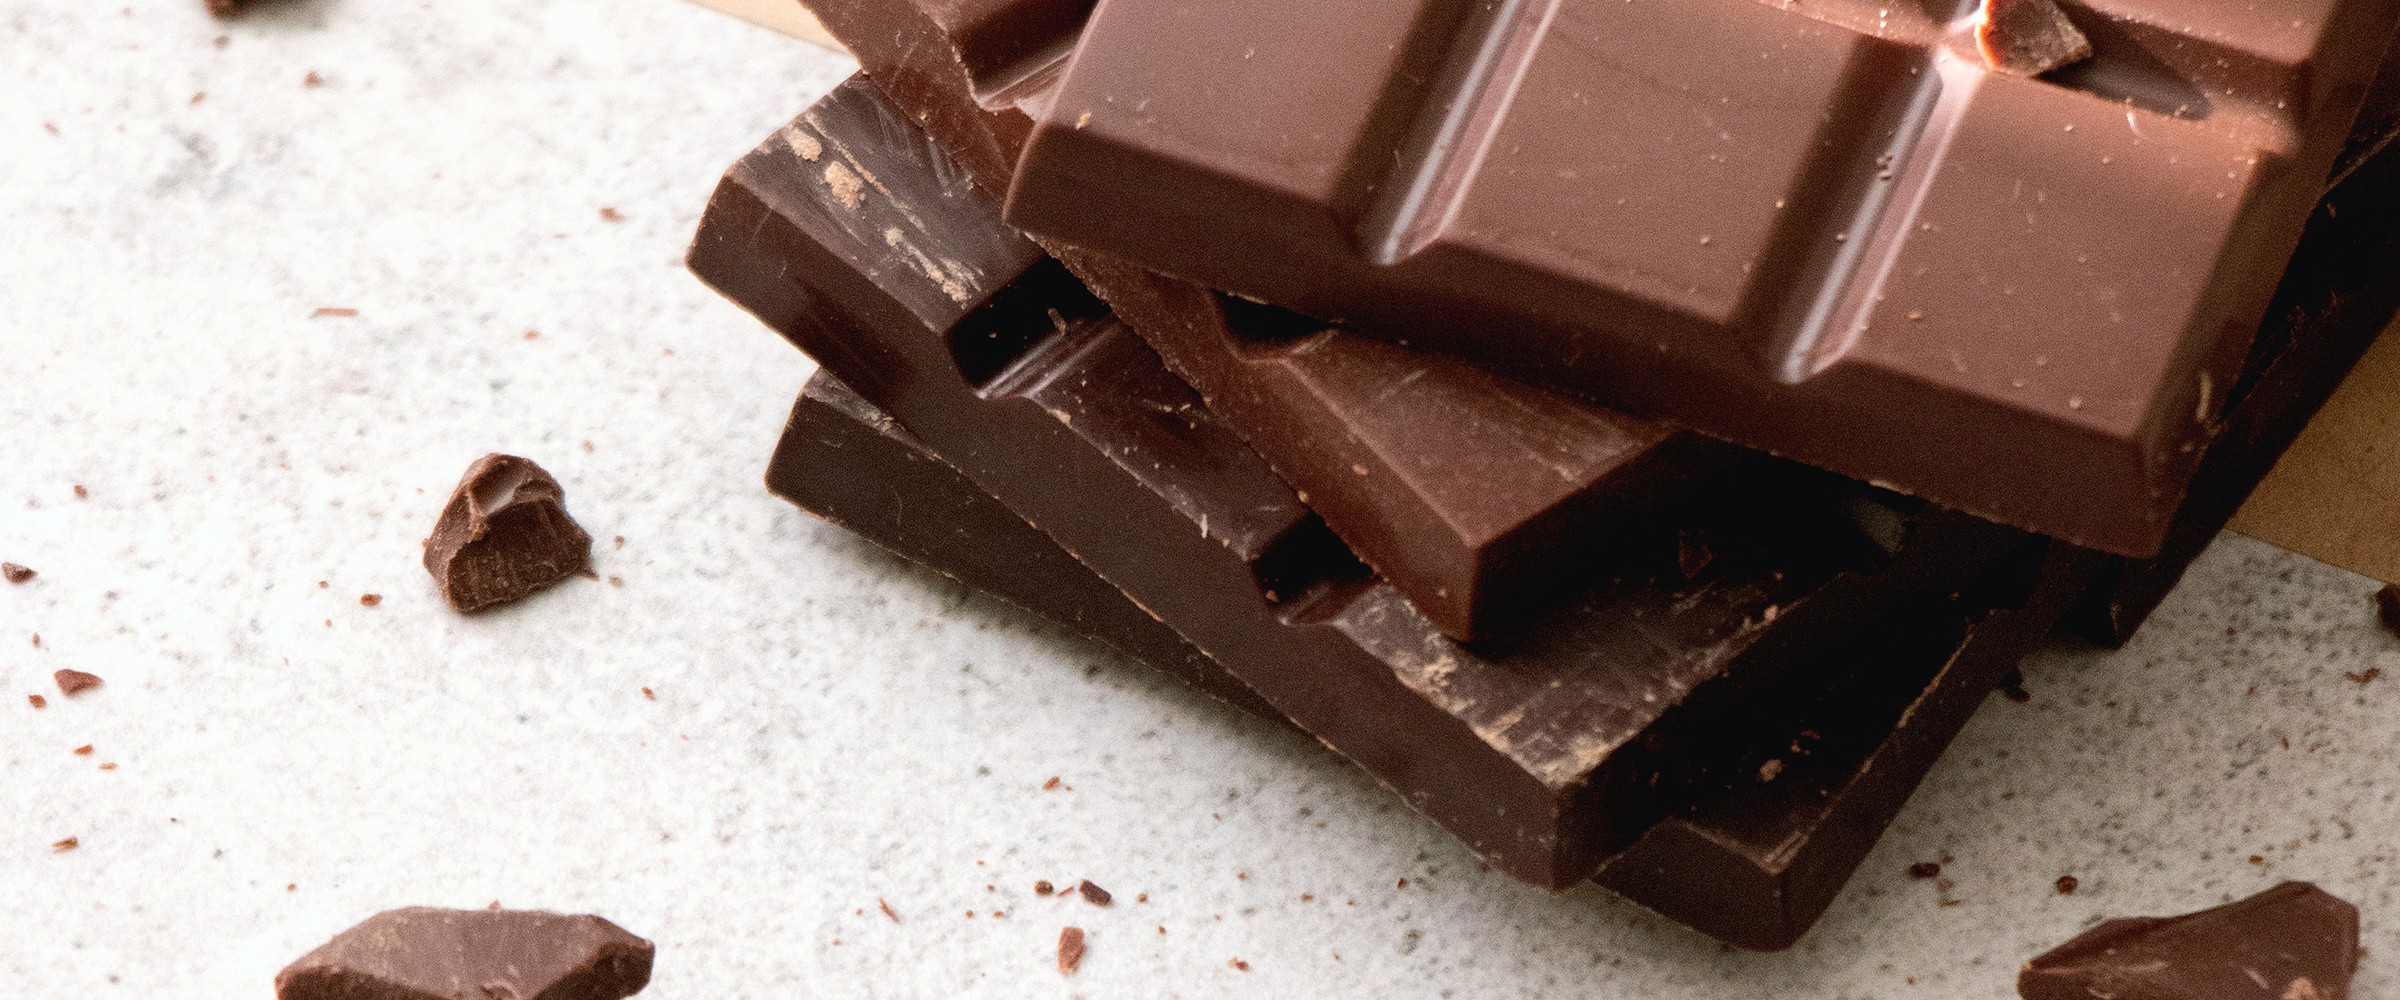 Choklad – fakta och tips